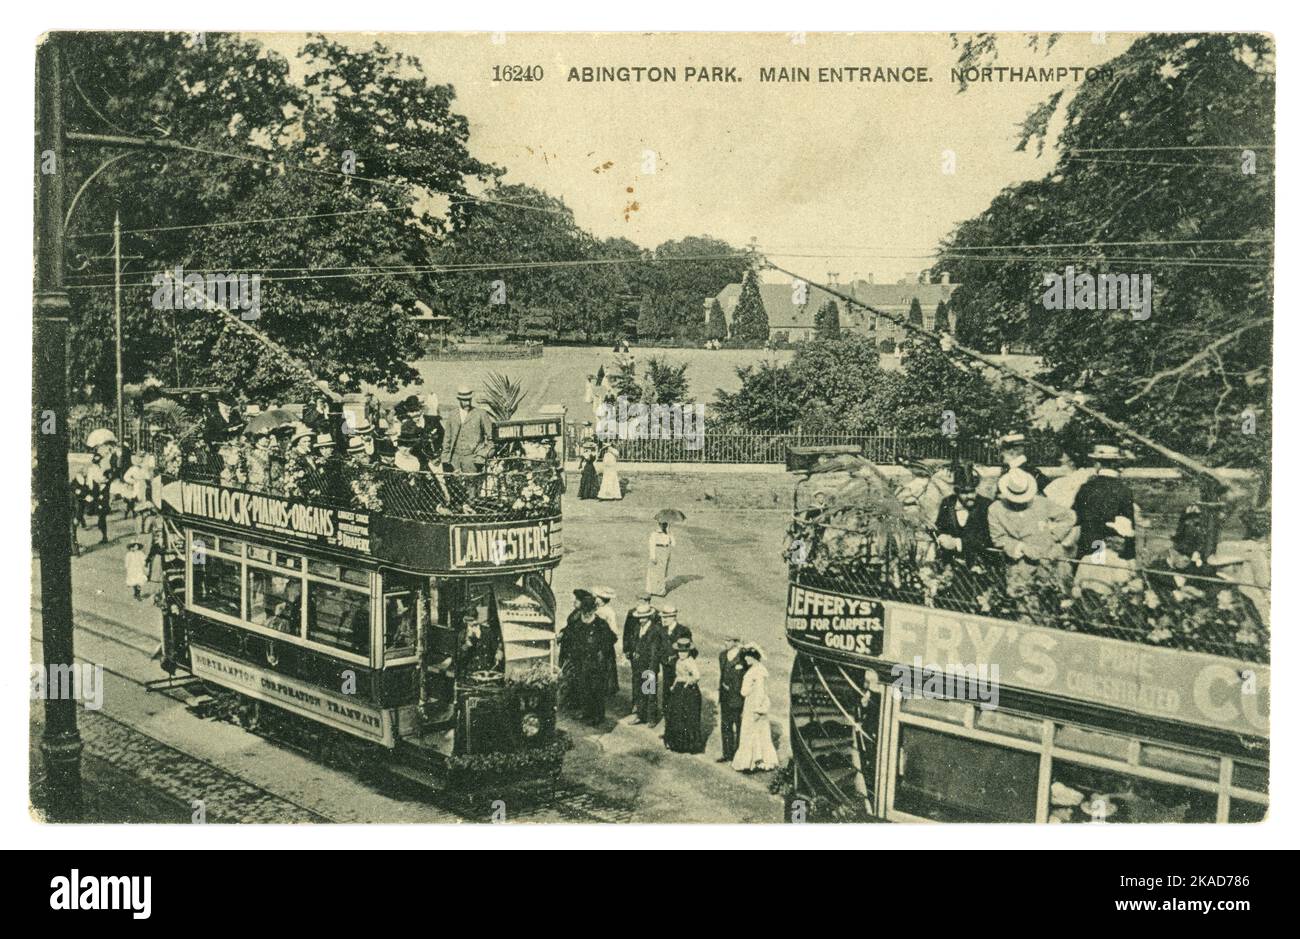 Postkarte aus edwardianischer Zeit des Abington Park, Haupteingang, zeigt elektrische Straßenbahnen mit vielen Passagieren, Werbung auf Straßenbahnen. Northampton, East Midlands, England, Großbritannien, datiert/veröffentlicht 1905 Stockfoto